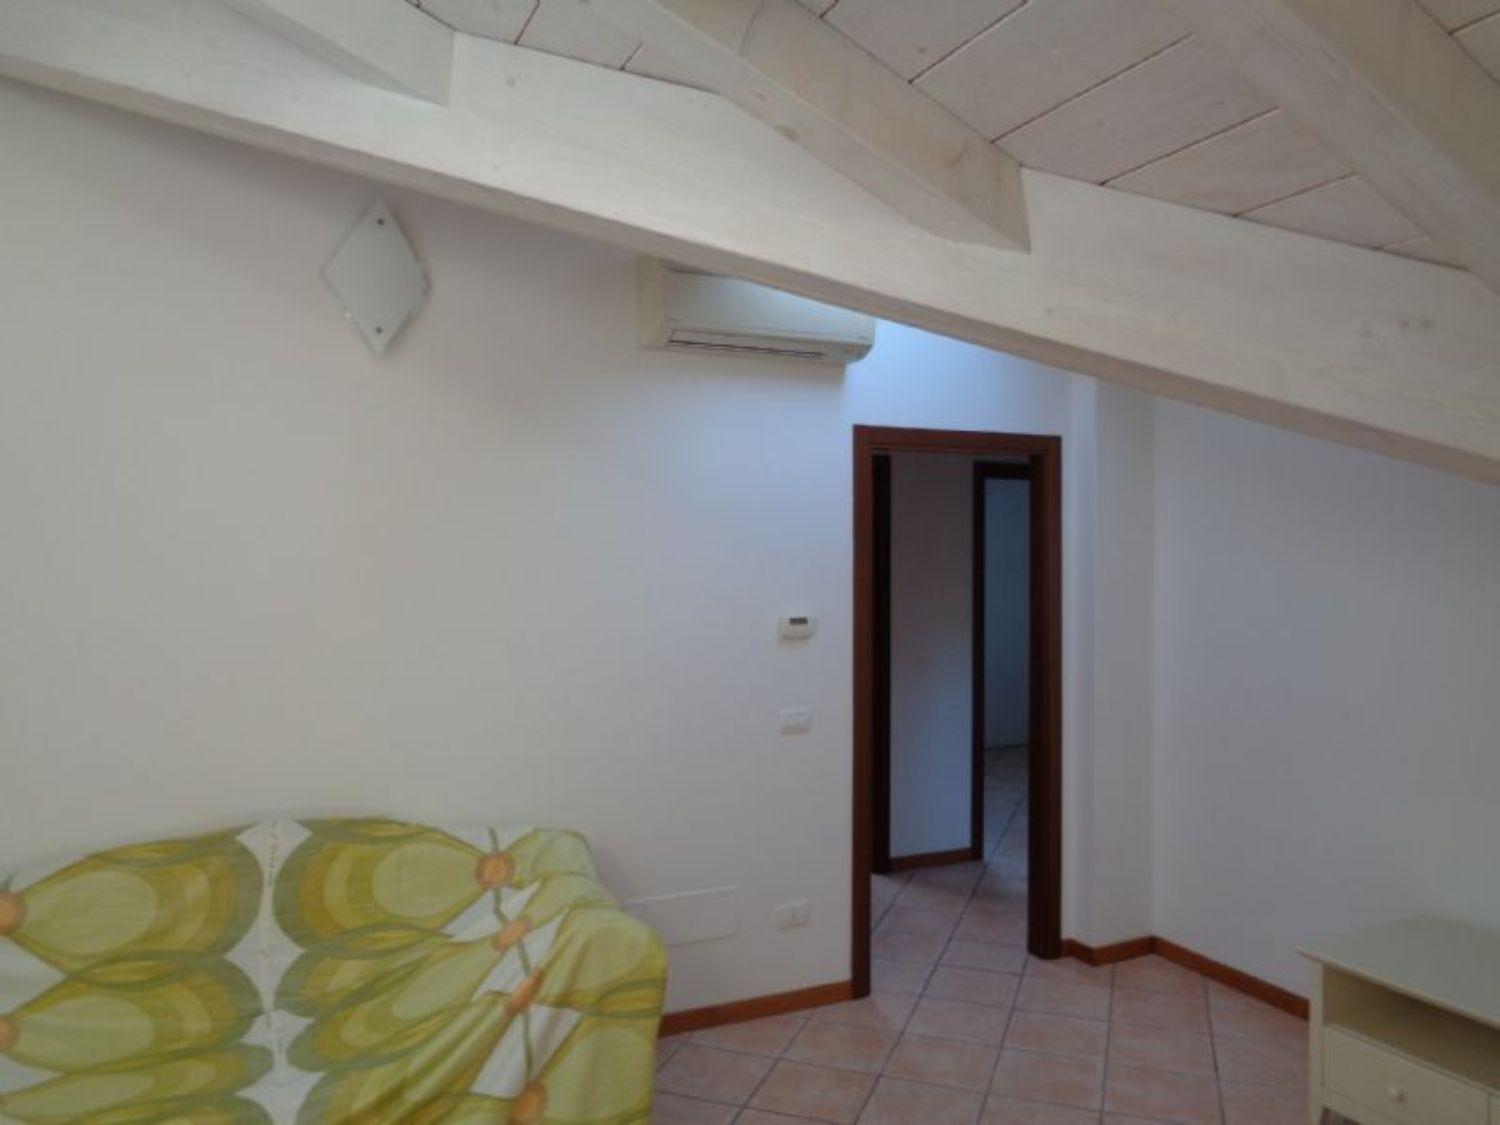 Appartamento in vendita a Casalgrande, 3 locali, prezzo € 160.000 | CambioCasa.it